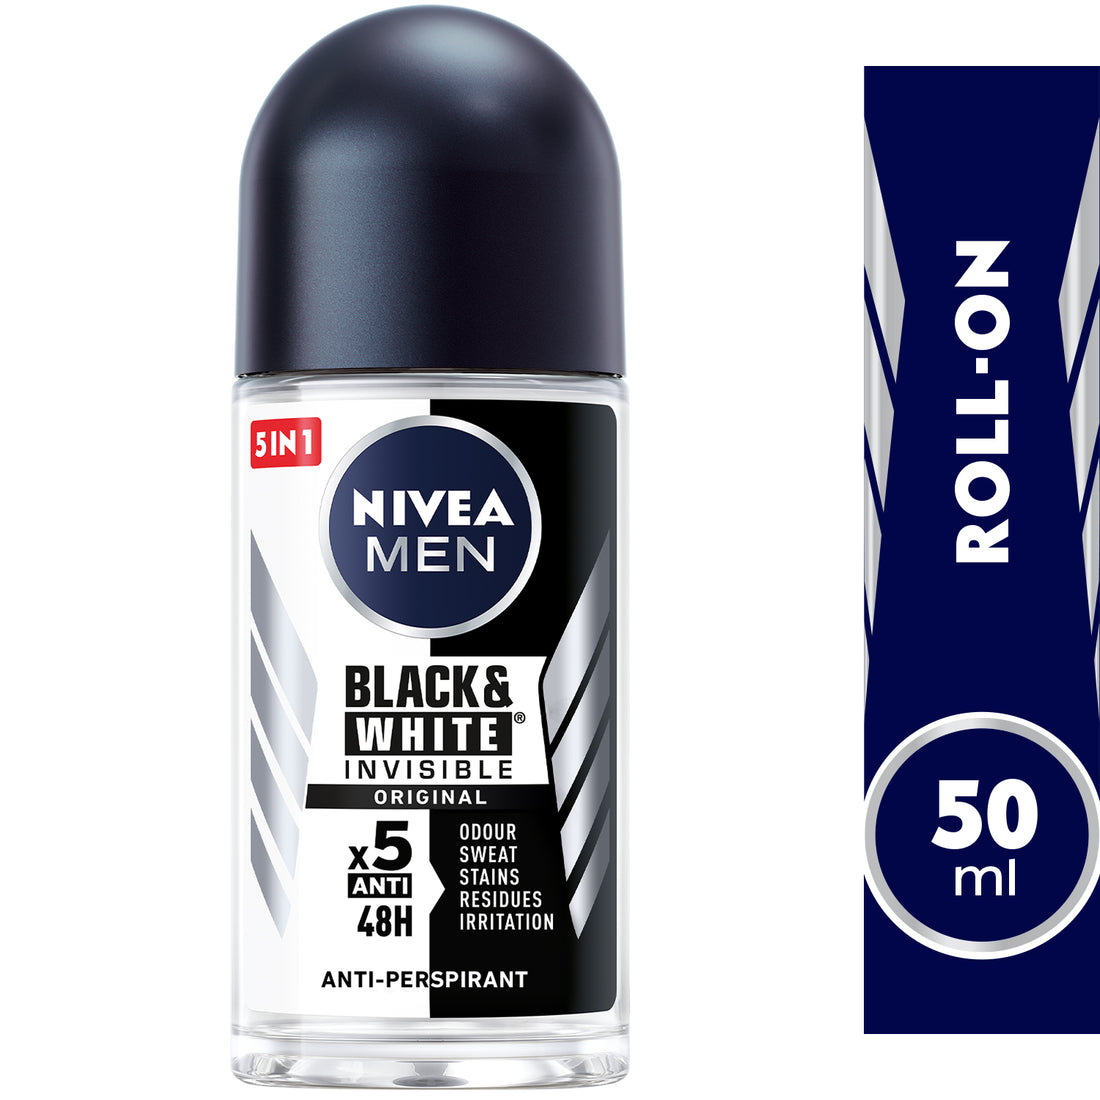 Nivea Men Black &amp; White Invisible Original, Antiperspirant for Men, Roll-on 50ml